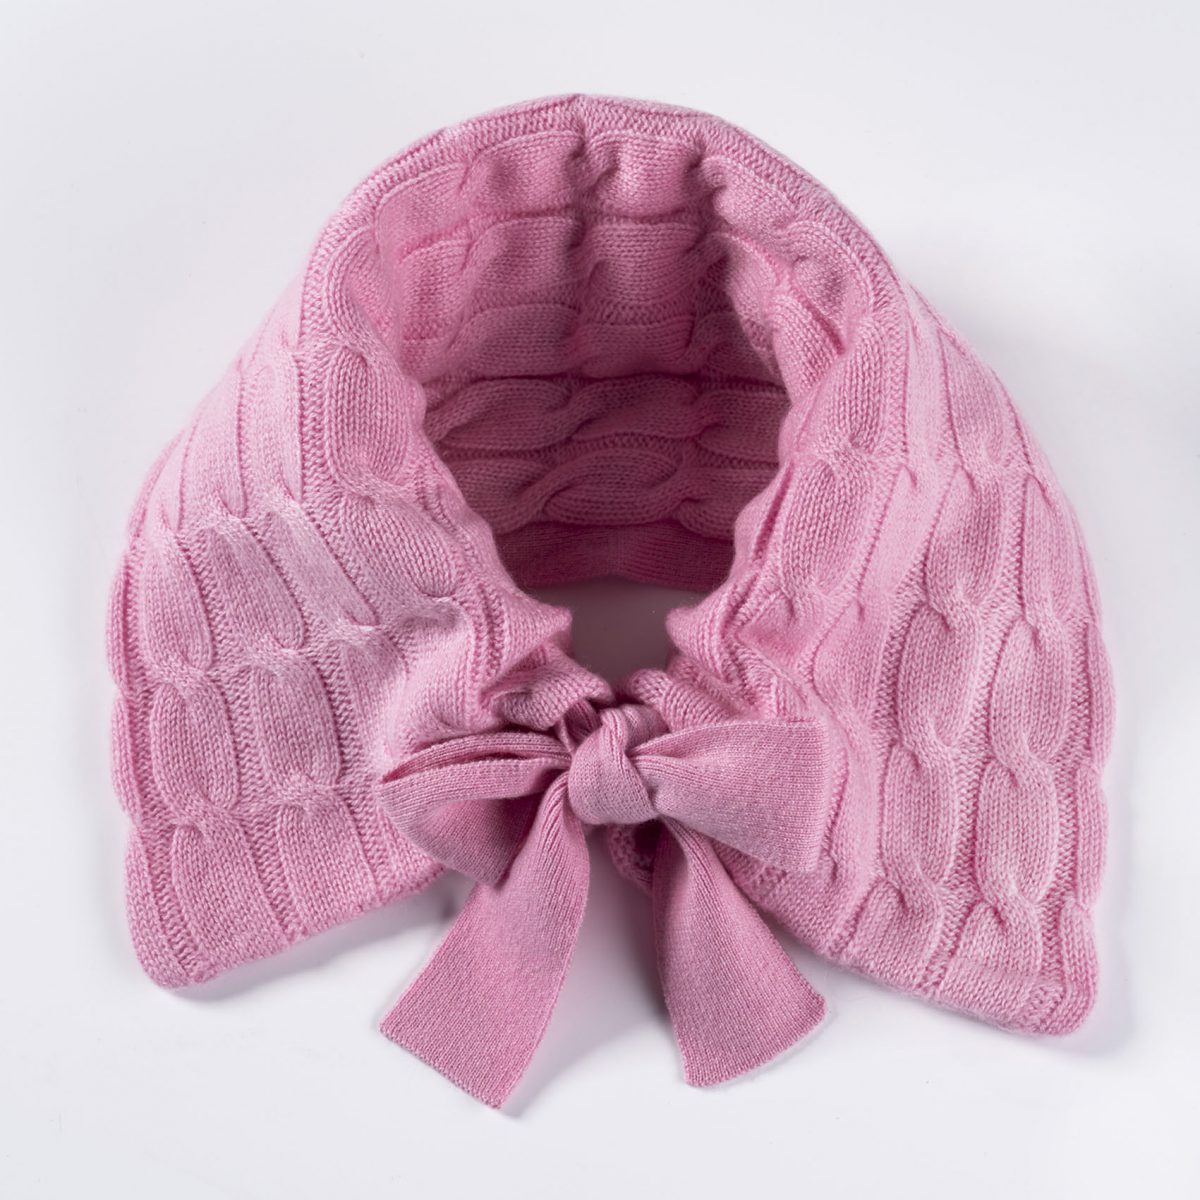 Stylischer ©Neckwarmer aus 100% Cashmere in rosa Kragen statt Schal